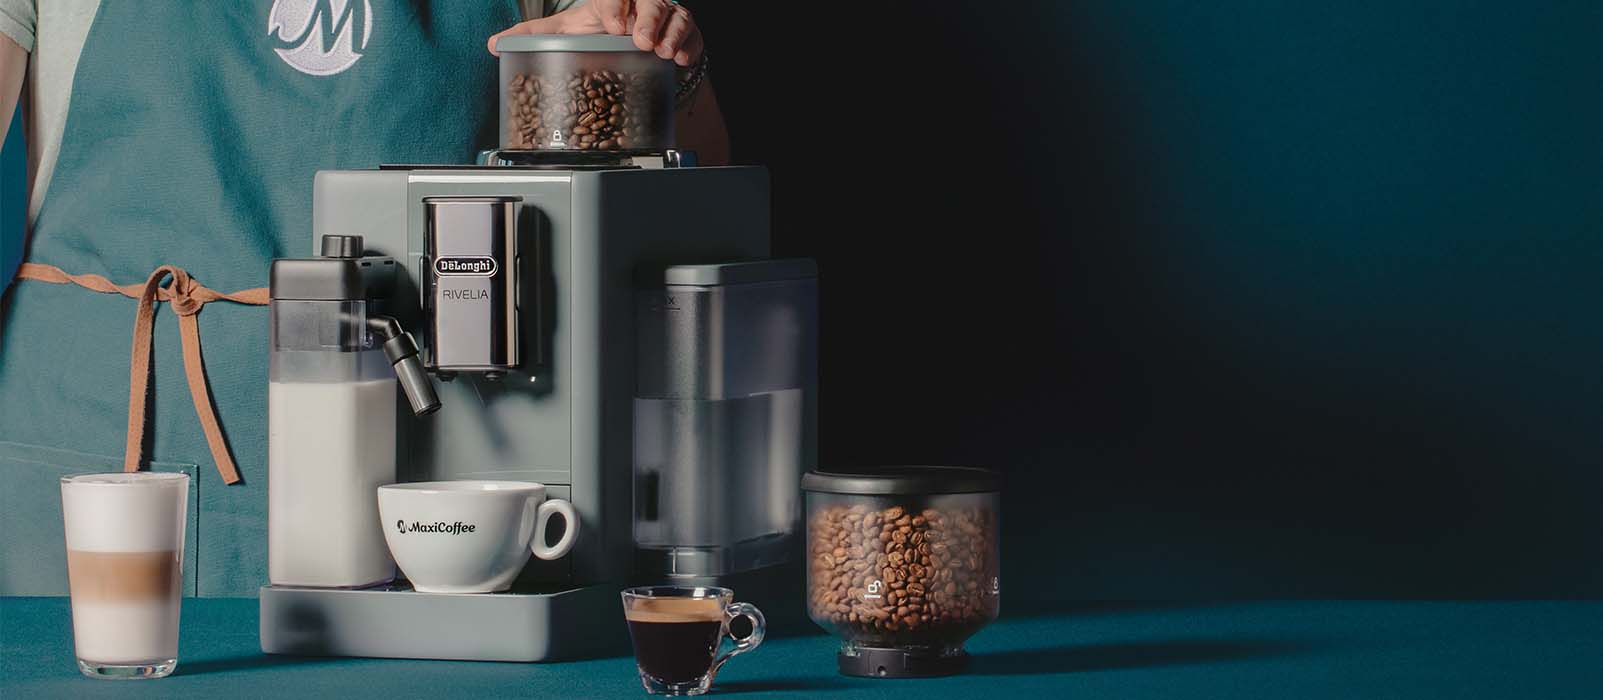 Machine à café De'Longhi, machine à café à grains